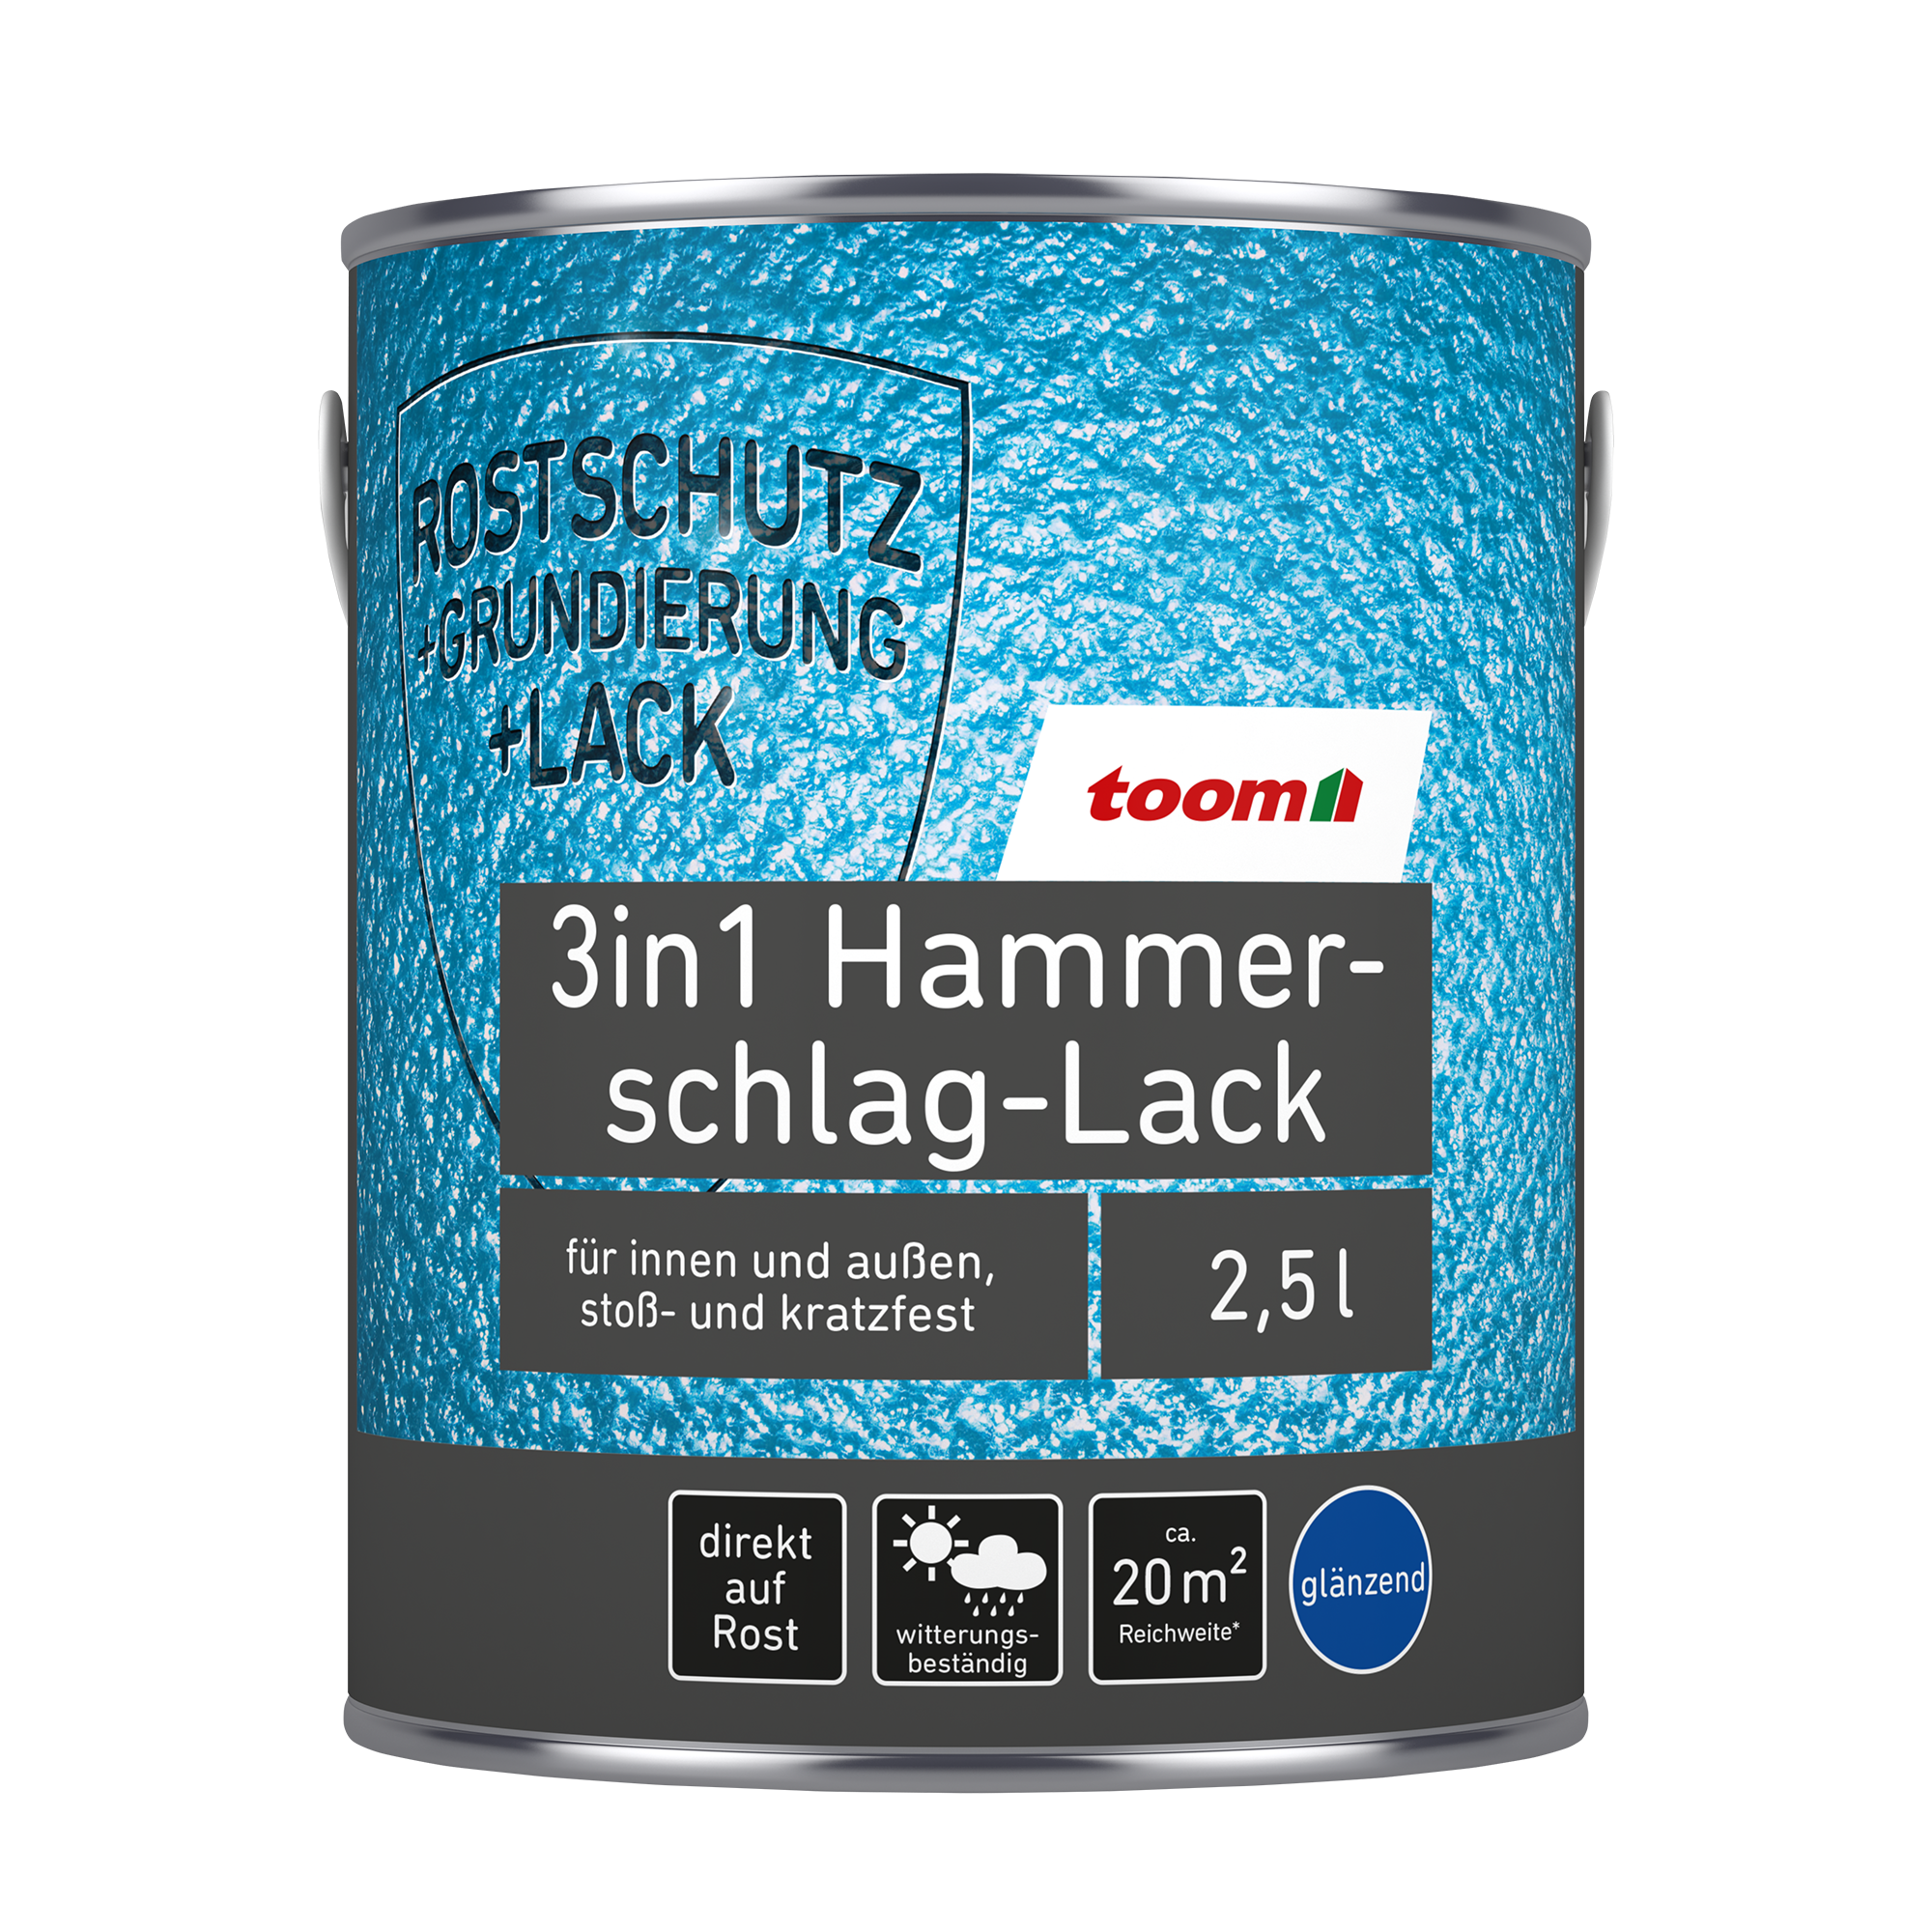 Hammerschlag-Lack silbergrau glänzend 2,5 l + product picture